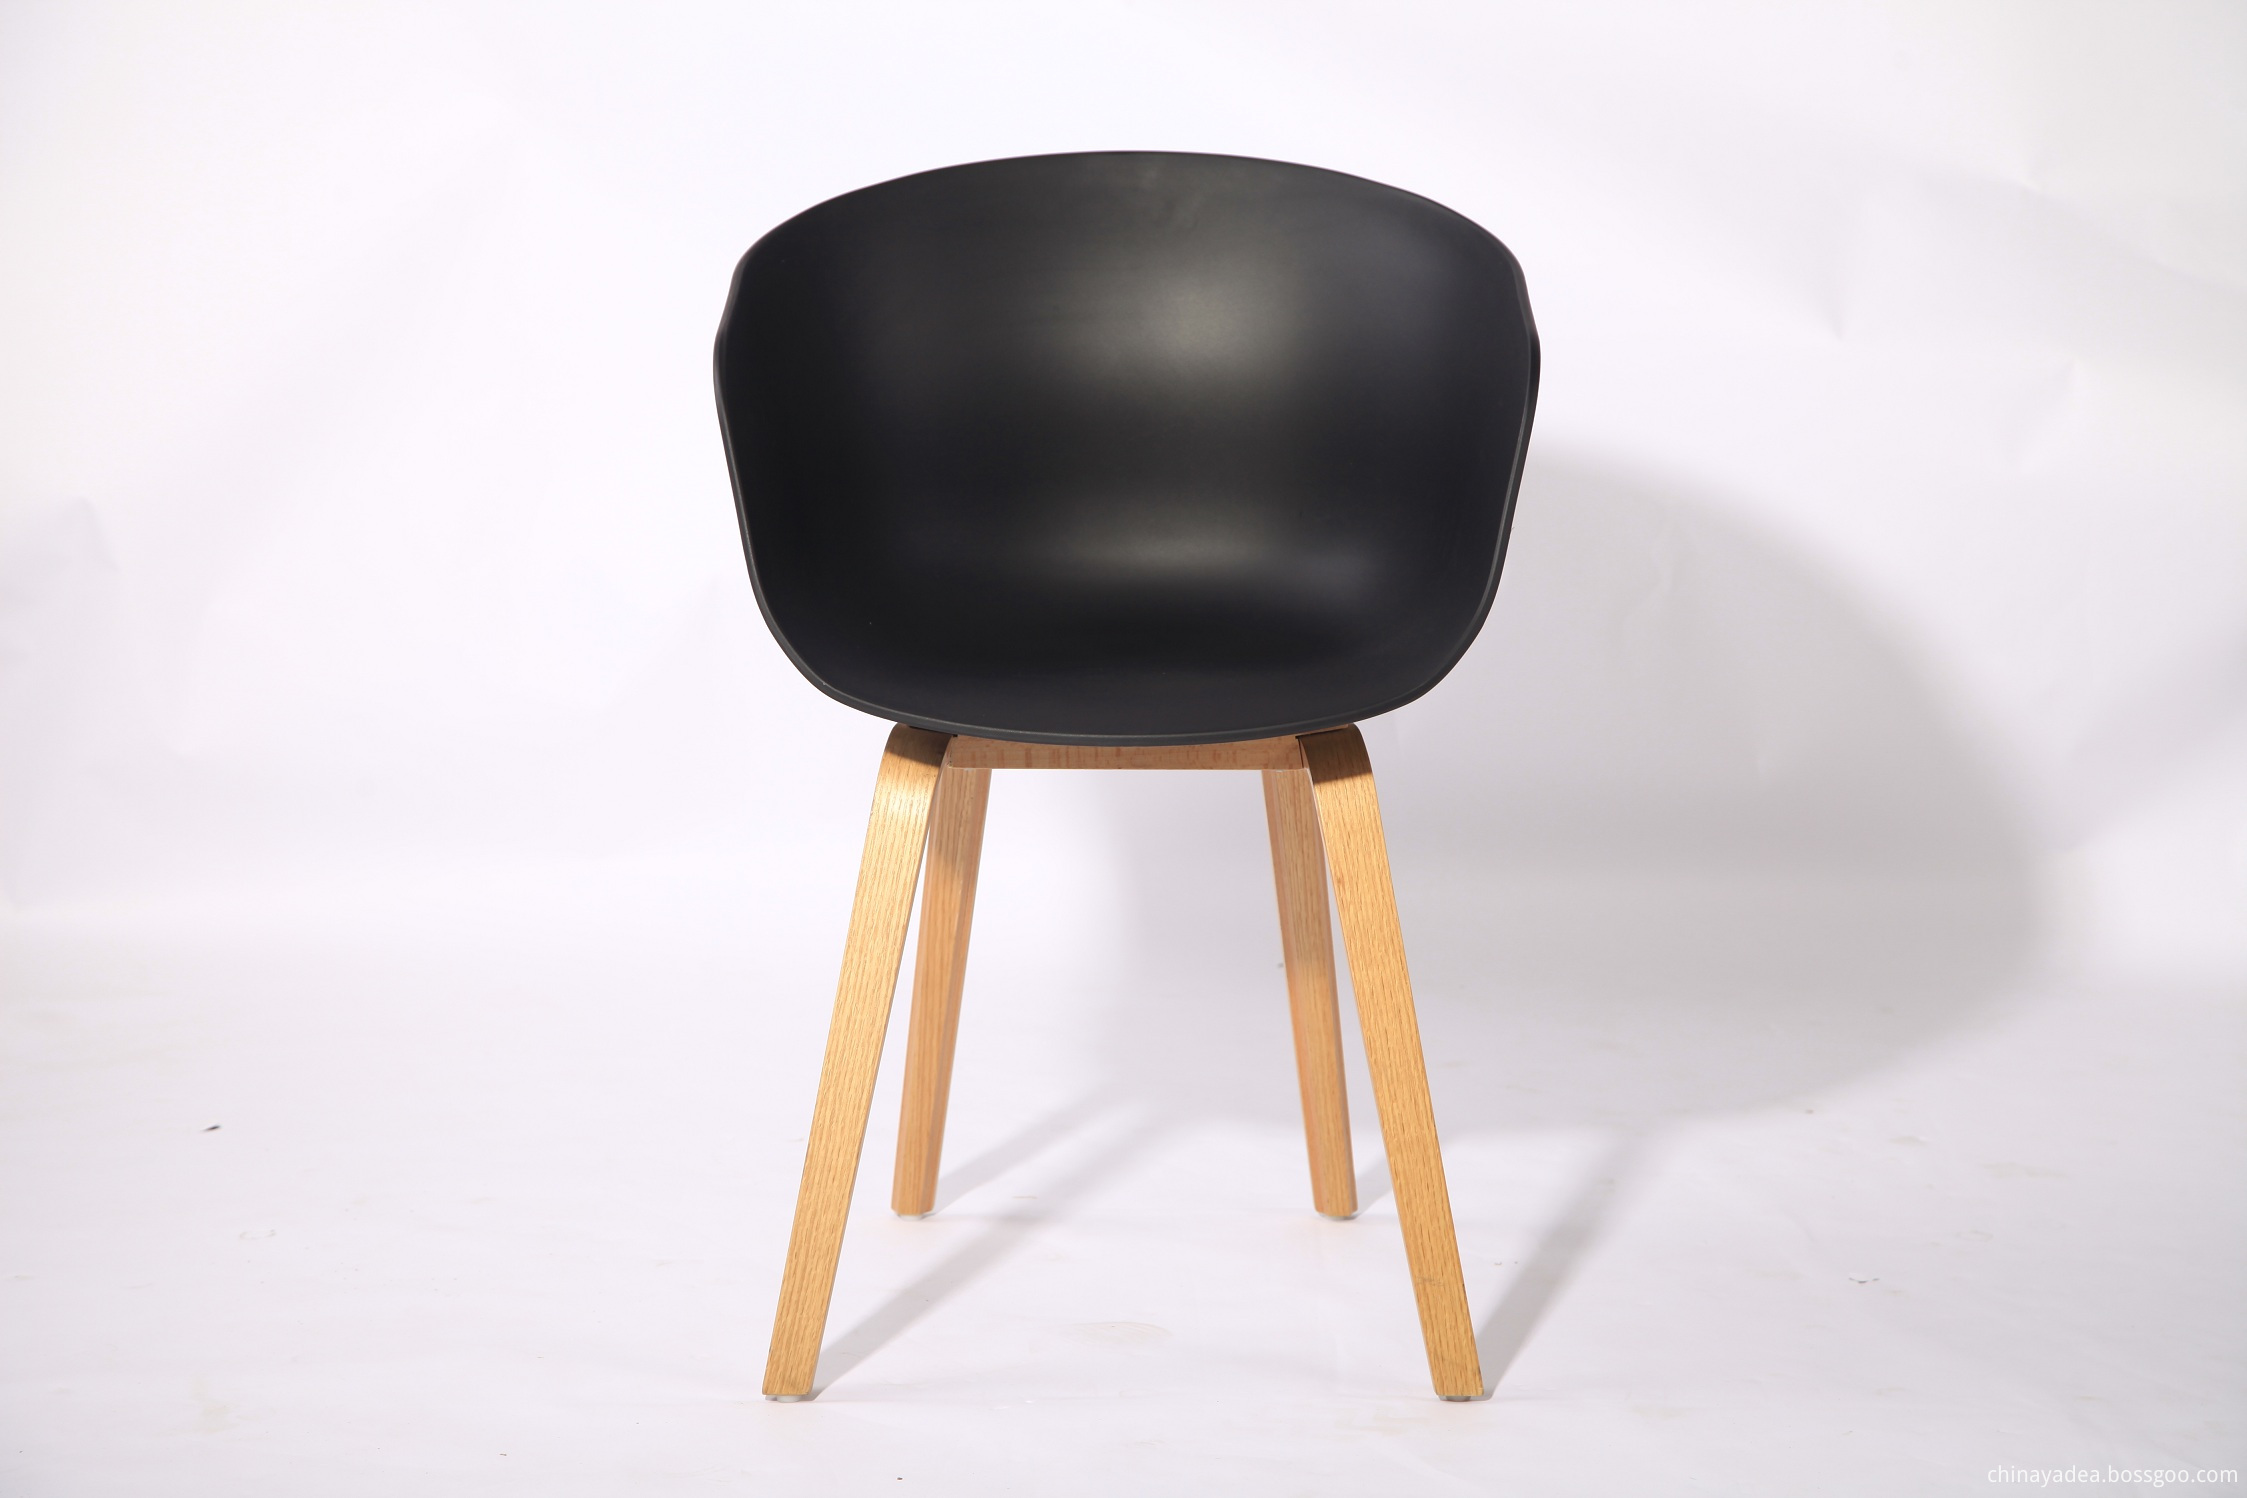 Modern wooden leg dining chair